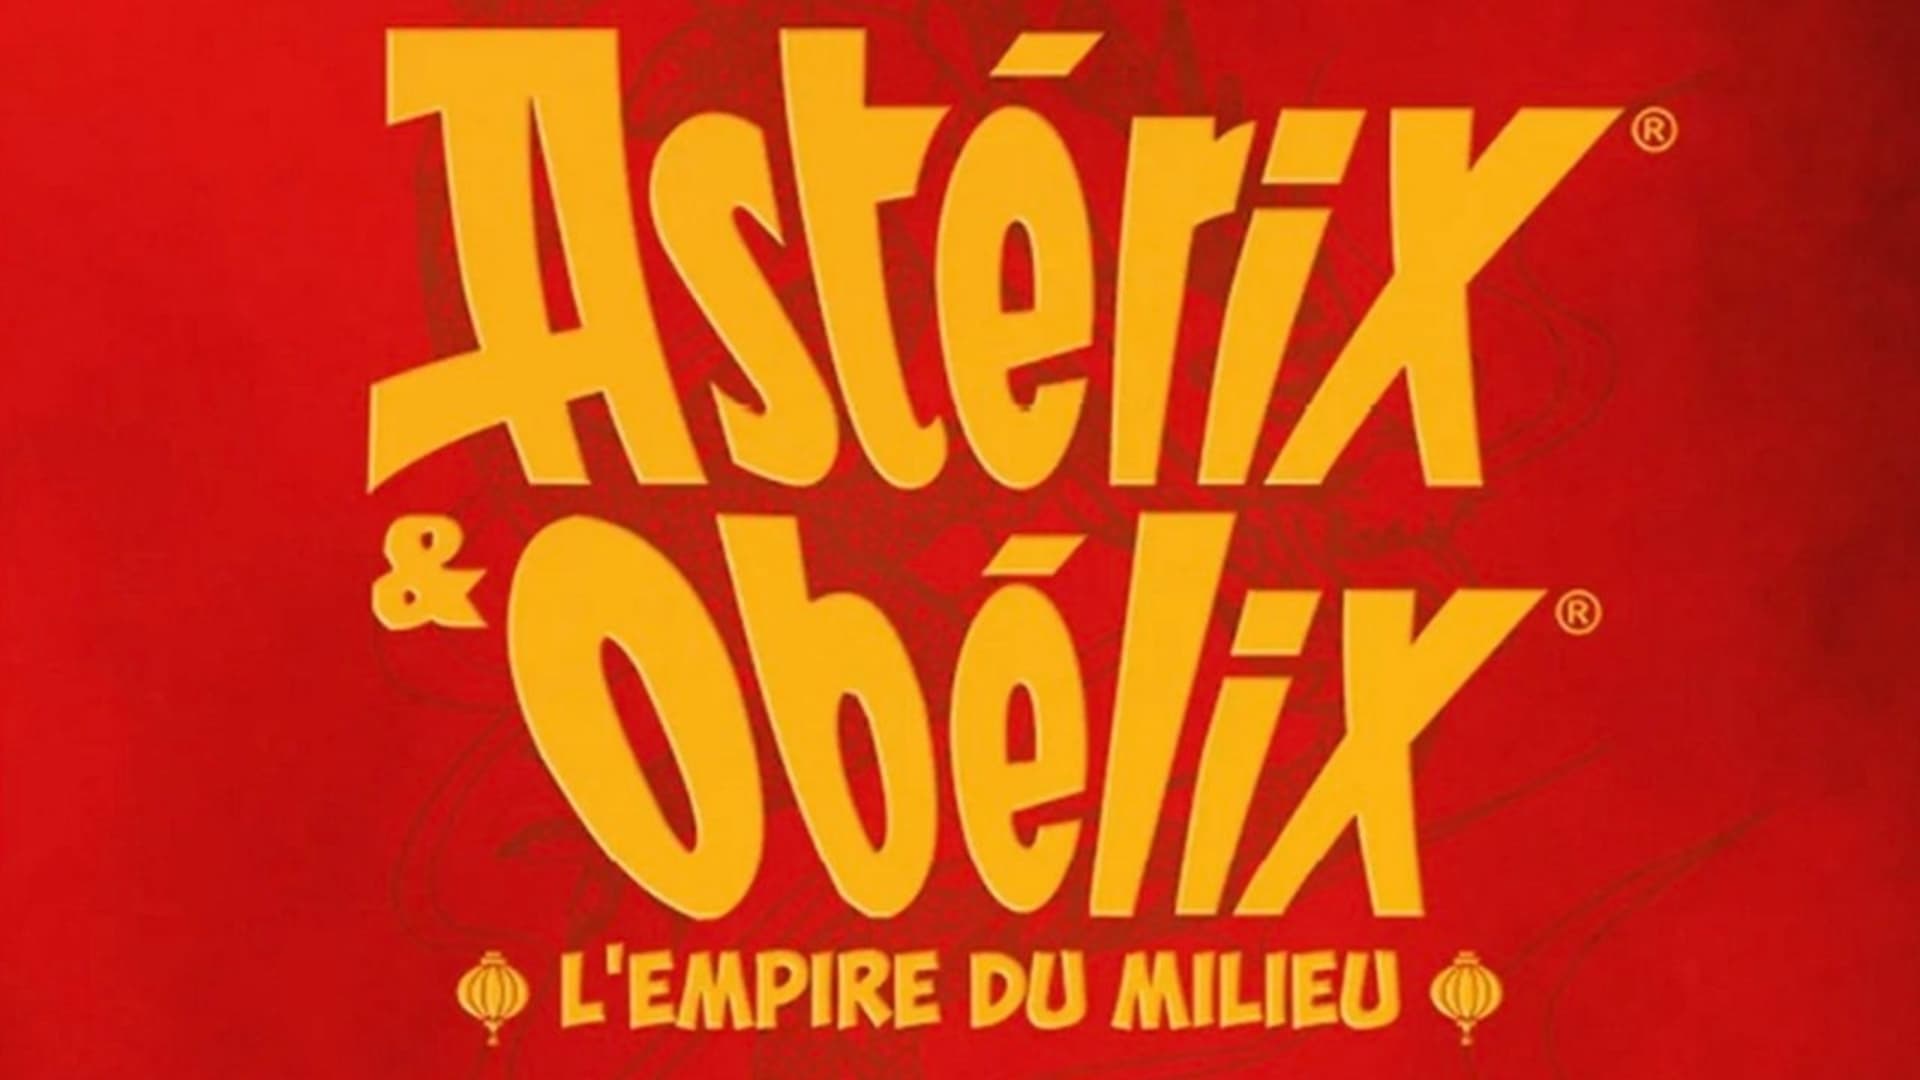 Astérix et Obélix L'empire du milieu : la date de sortie dévoilée